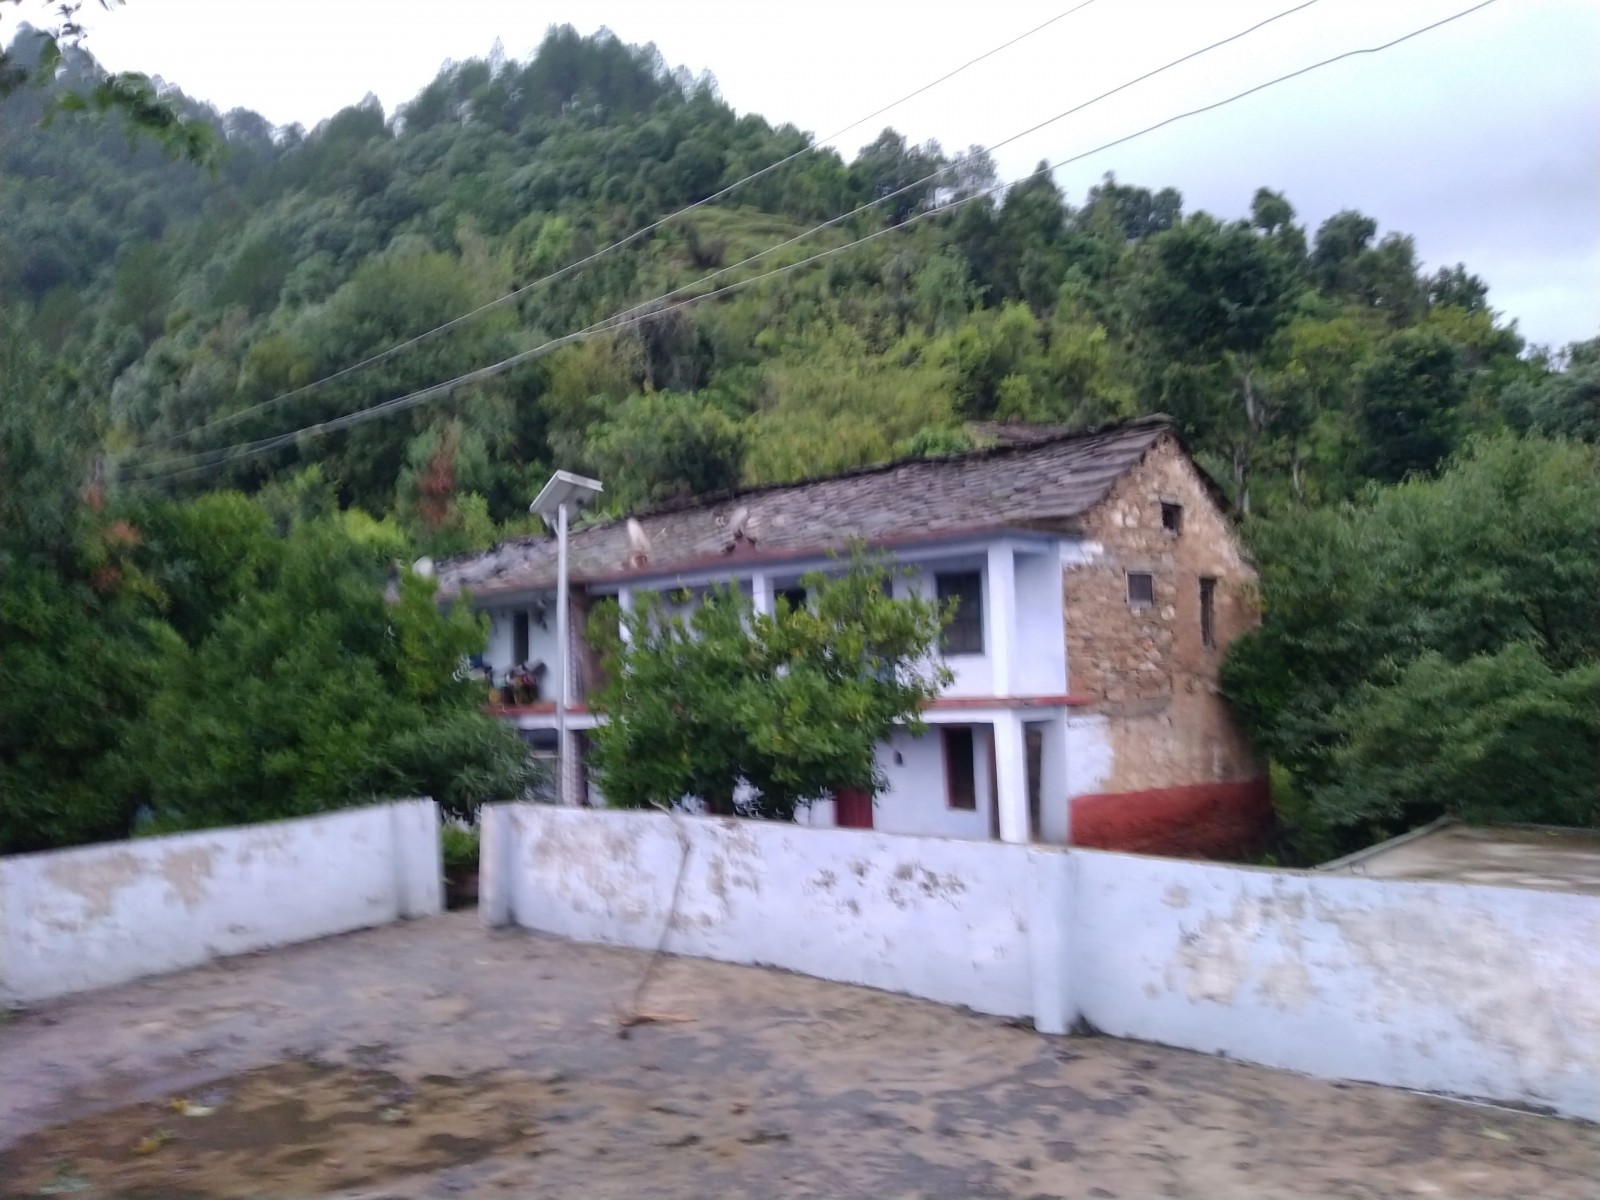 Kanchula village, Chamoli